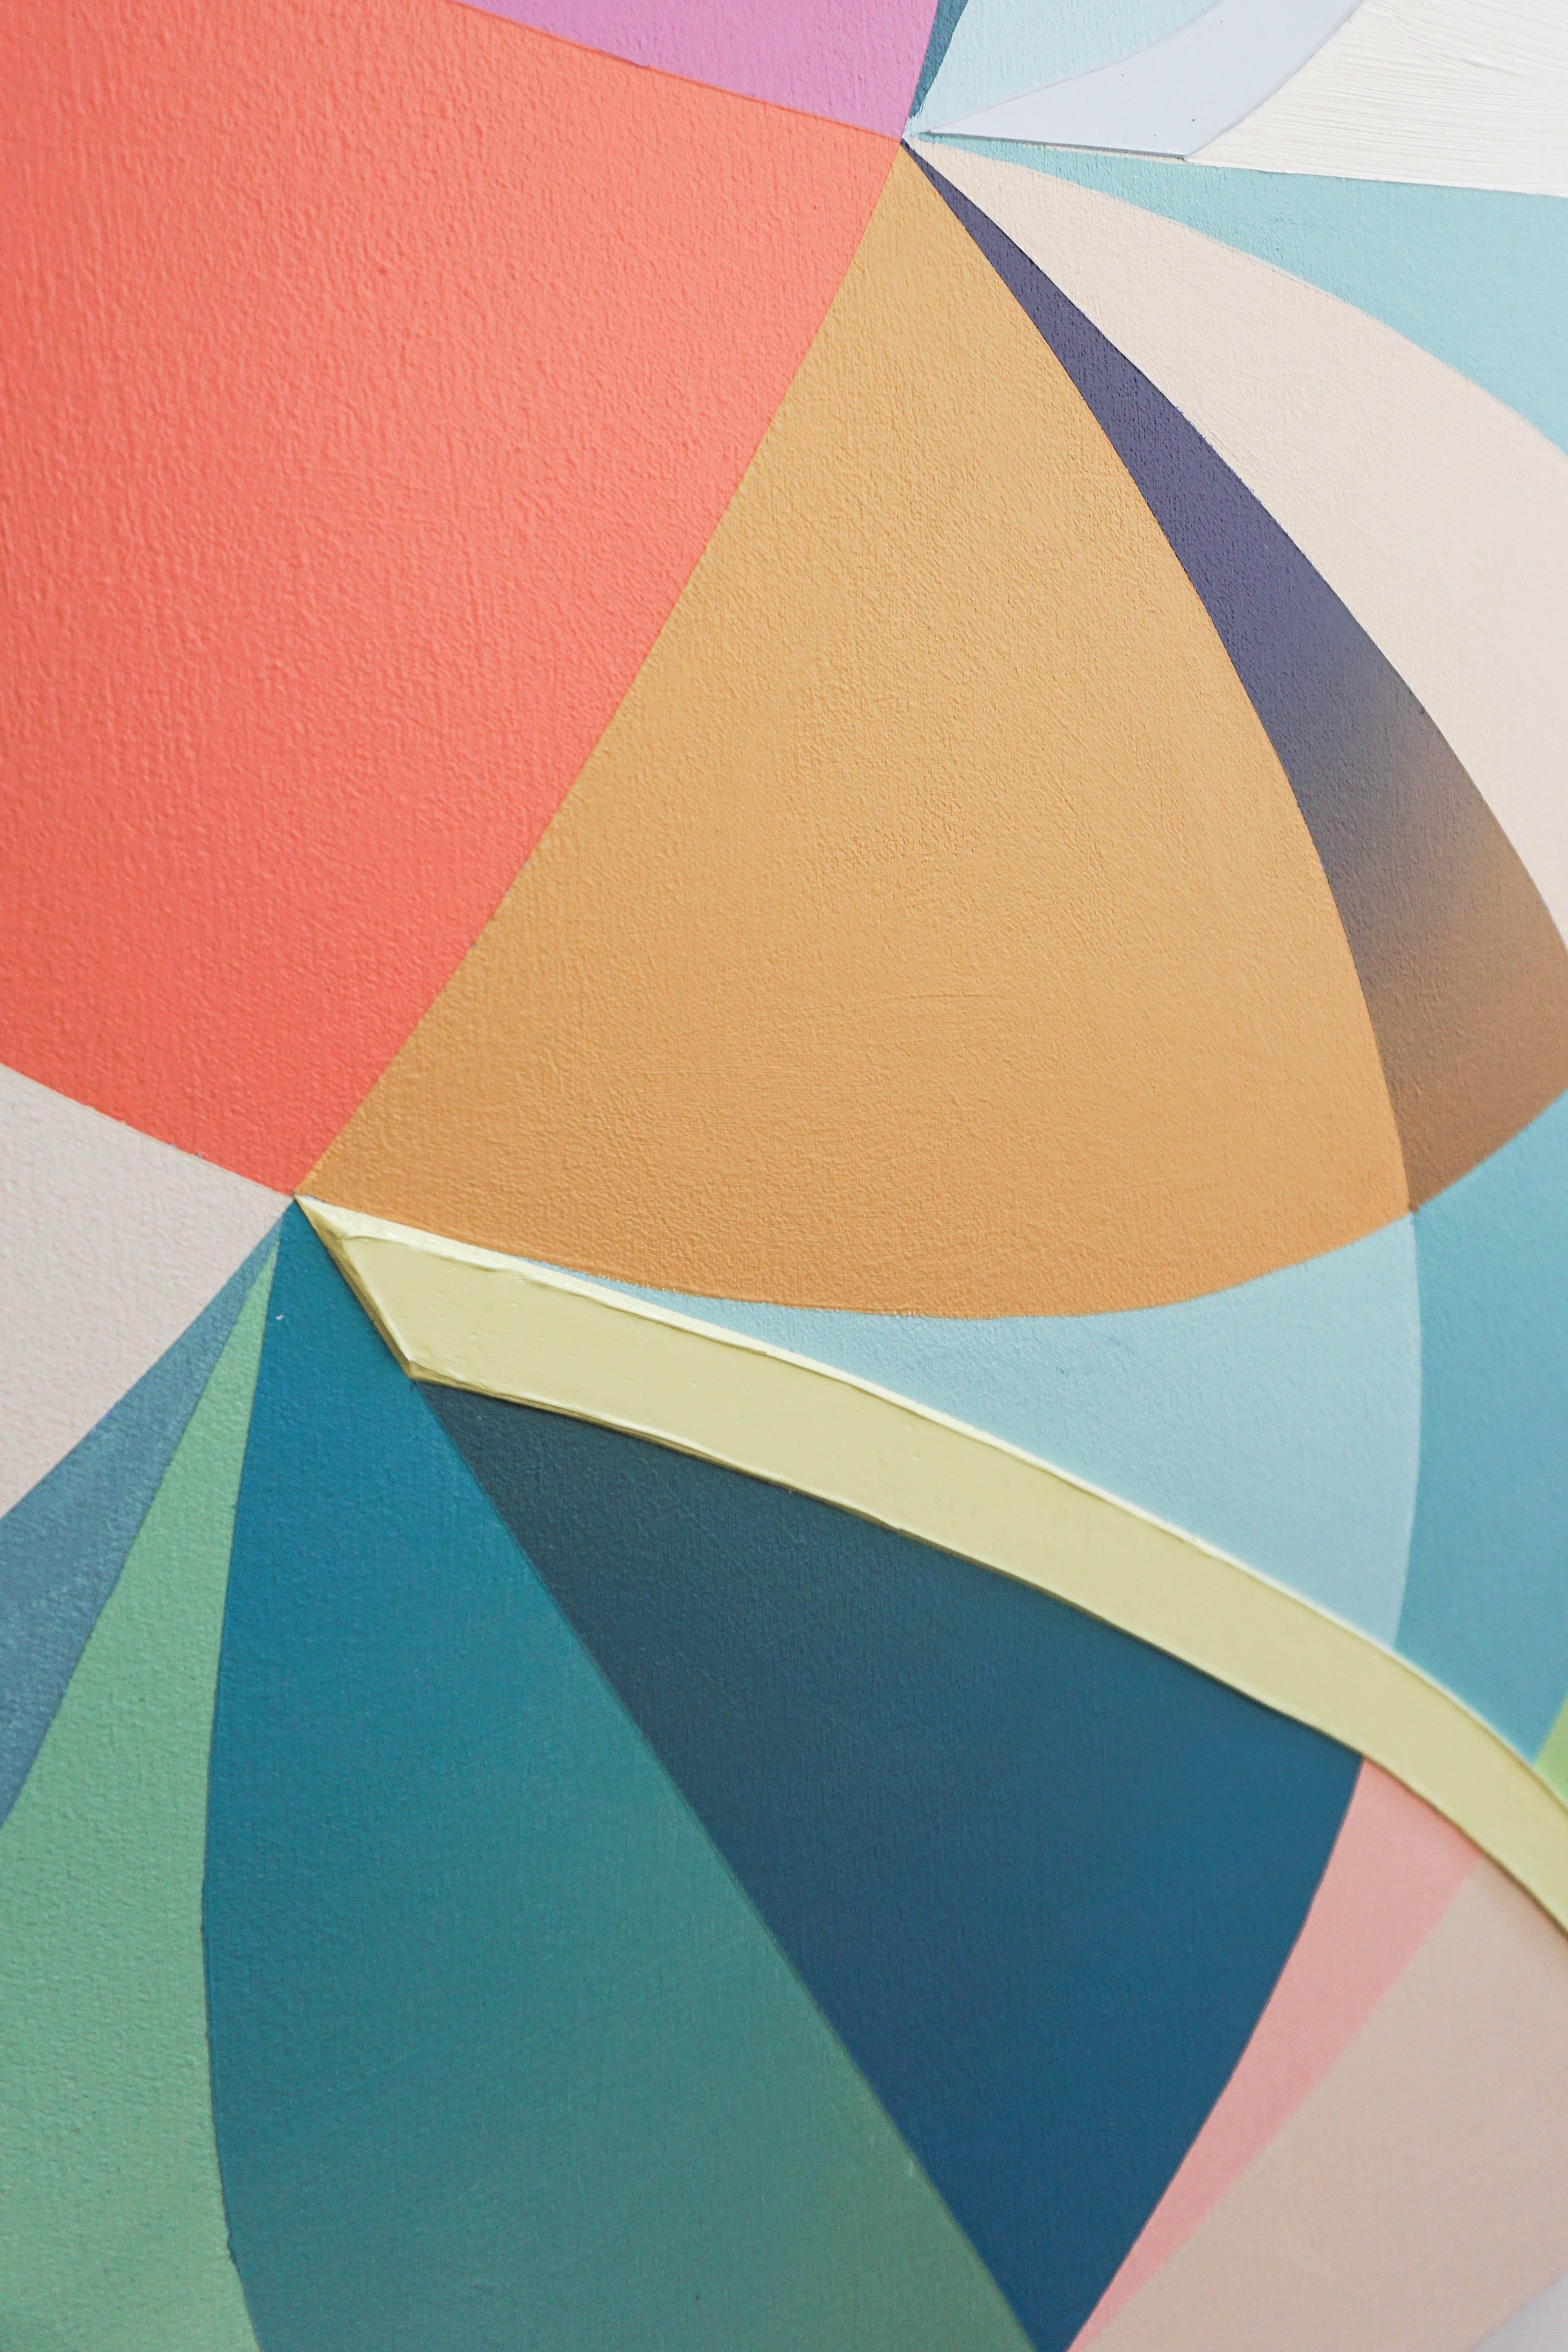 GEOTHERMAL de Michelle Weddle est une peinture acrylique sur toile constituée de formes géométriques et curvilignes de couleur unie. Les bleus et verts clairs sont rejoints par des blocs de rose corail et de violet, et des formes de tons blancs